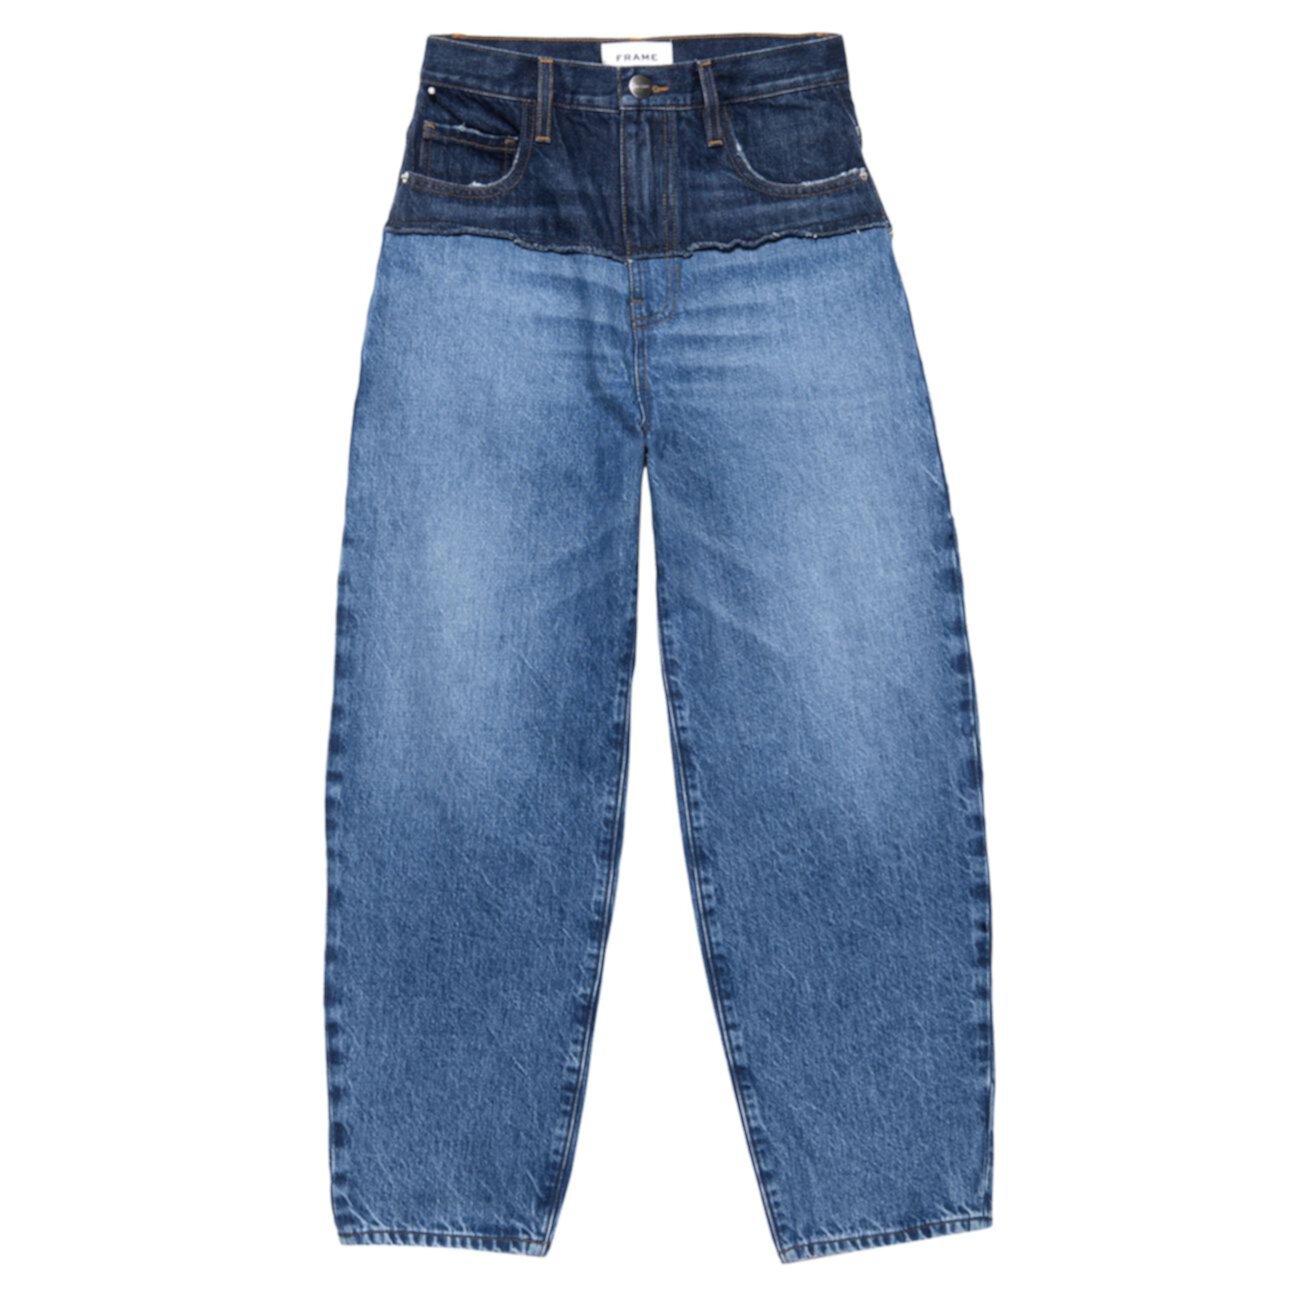 Реконструированные джинсы с эффектом «омбре» сверхвысокой посадки FRAME